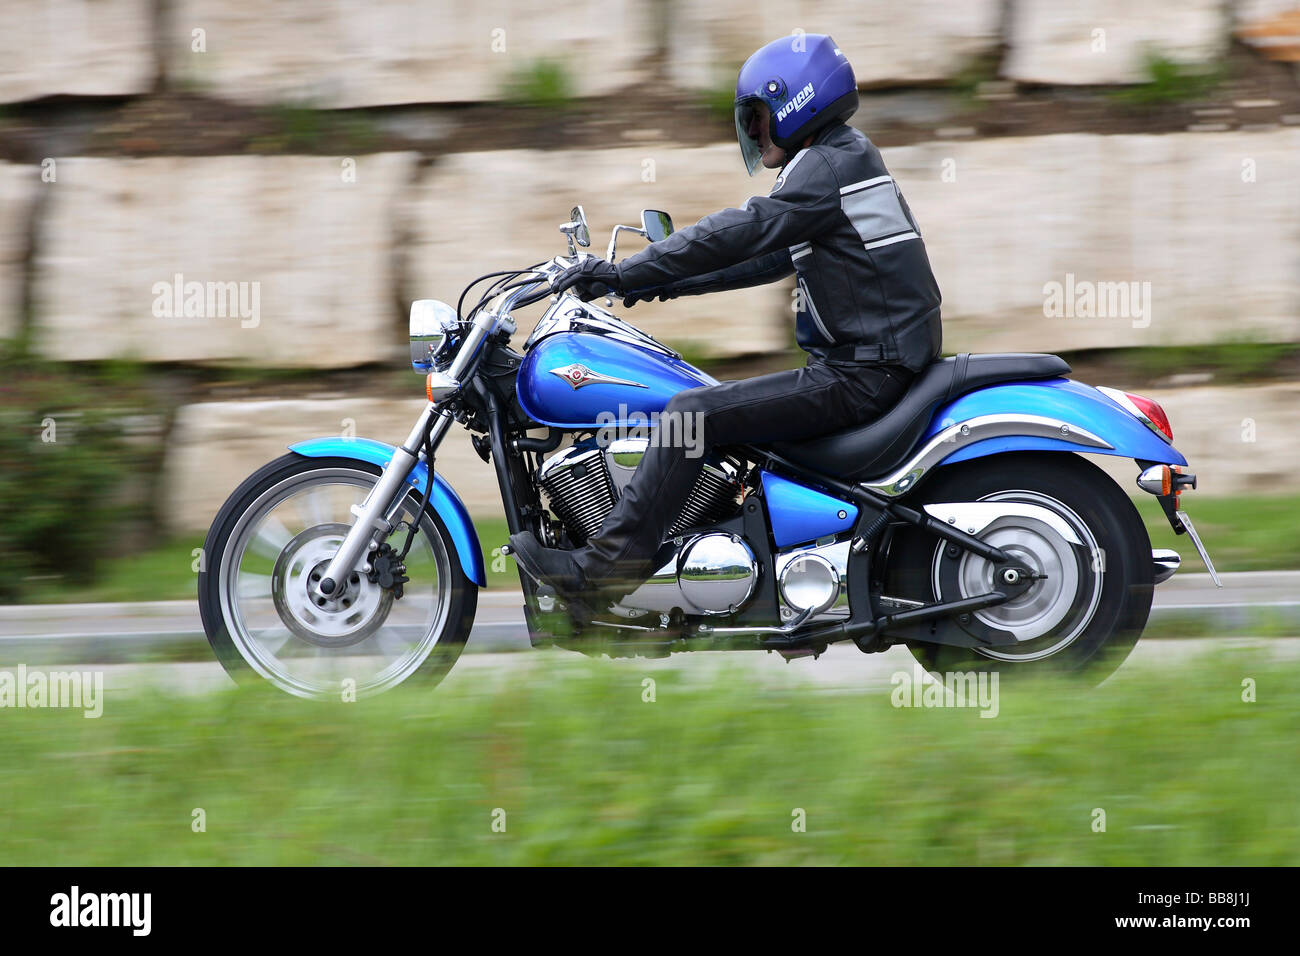 Kawasaki VN 900 motorcycle, riding shot Stock Photo